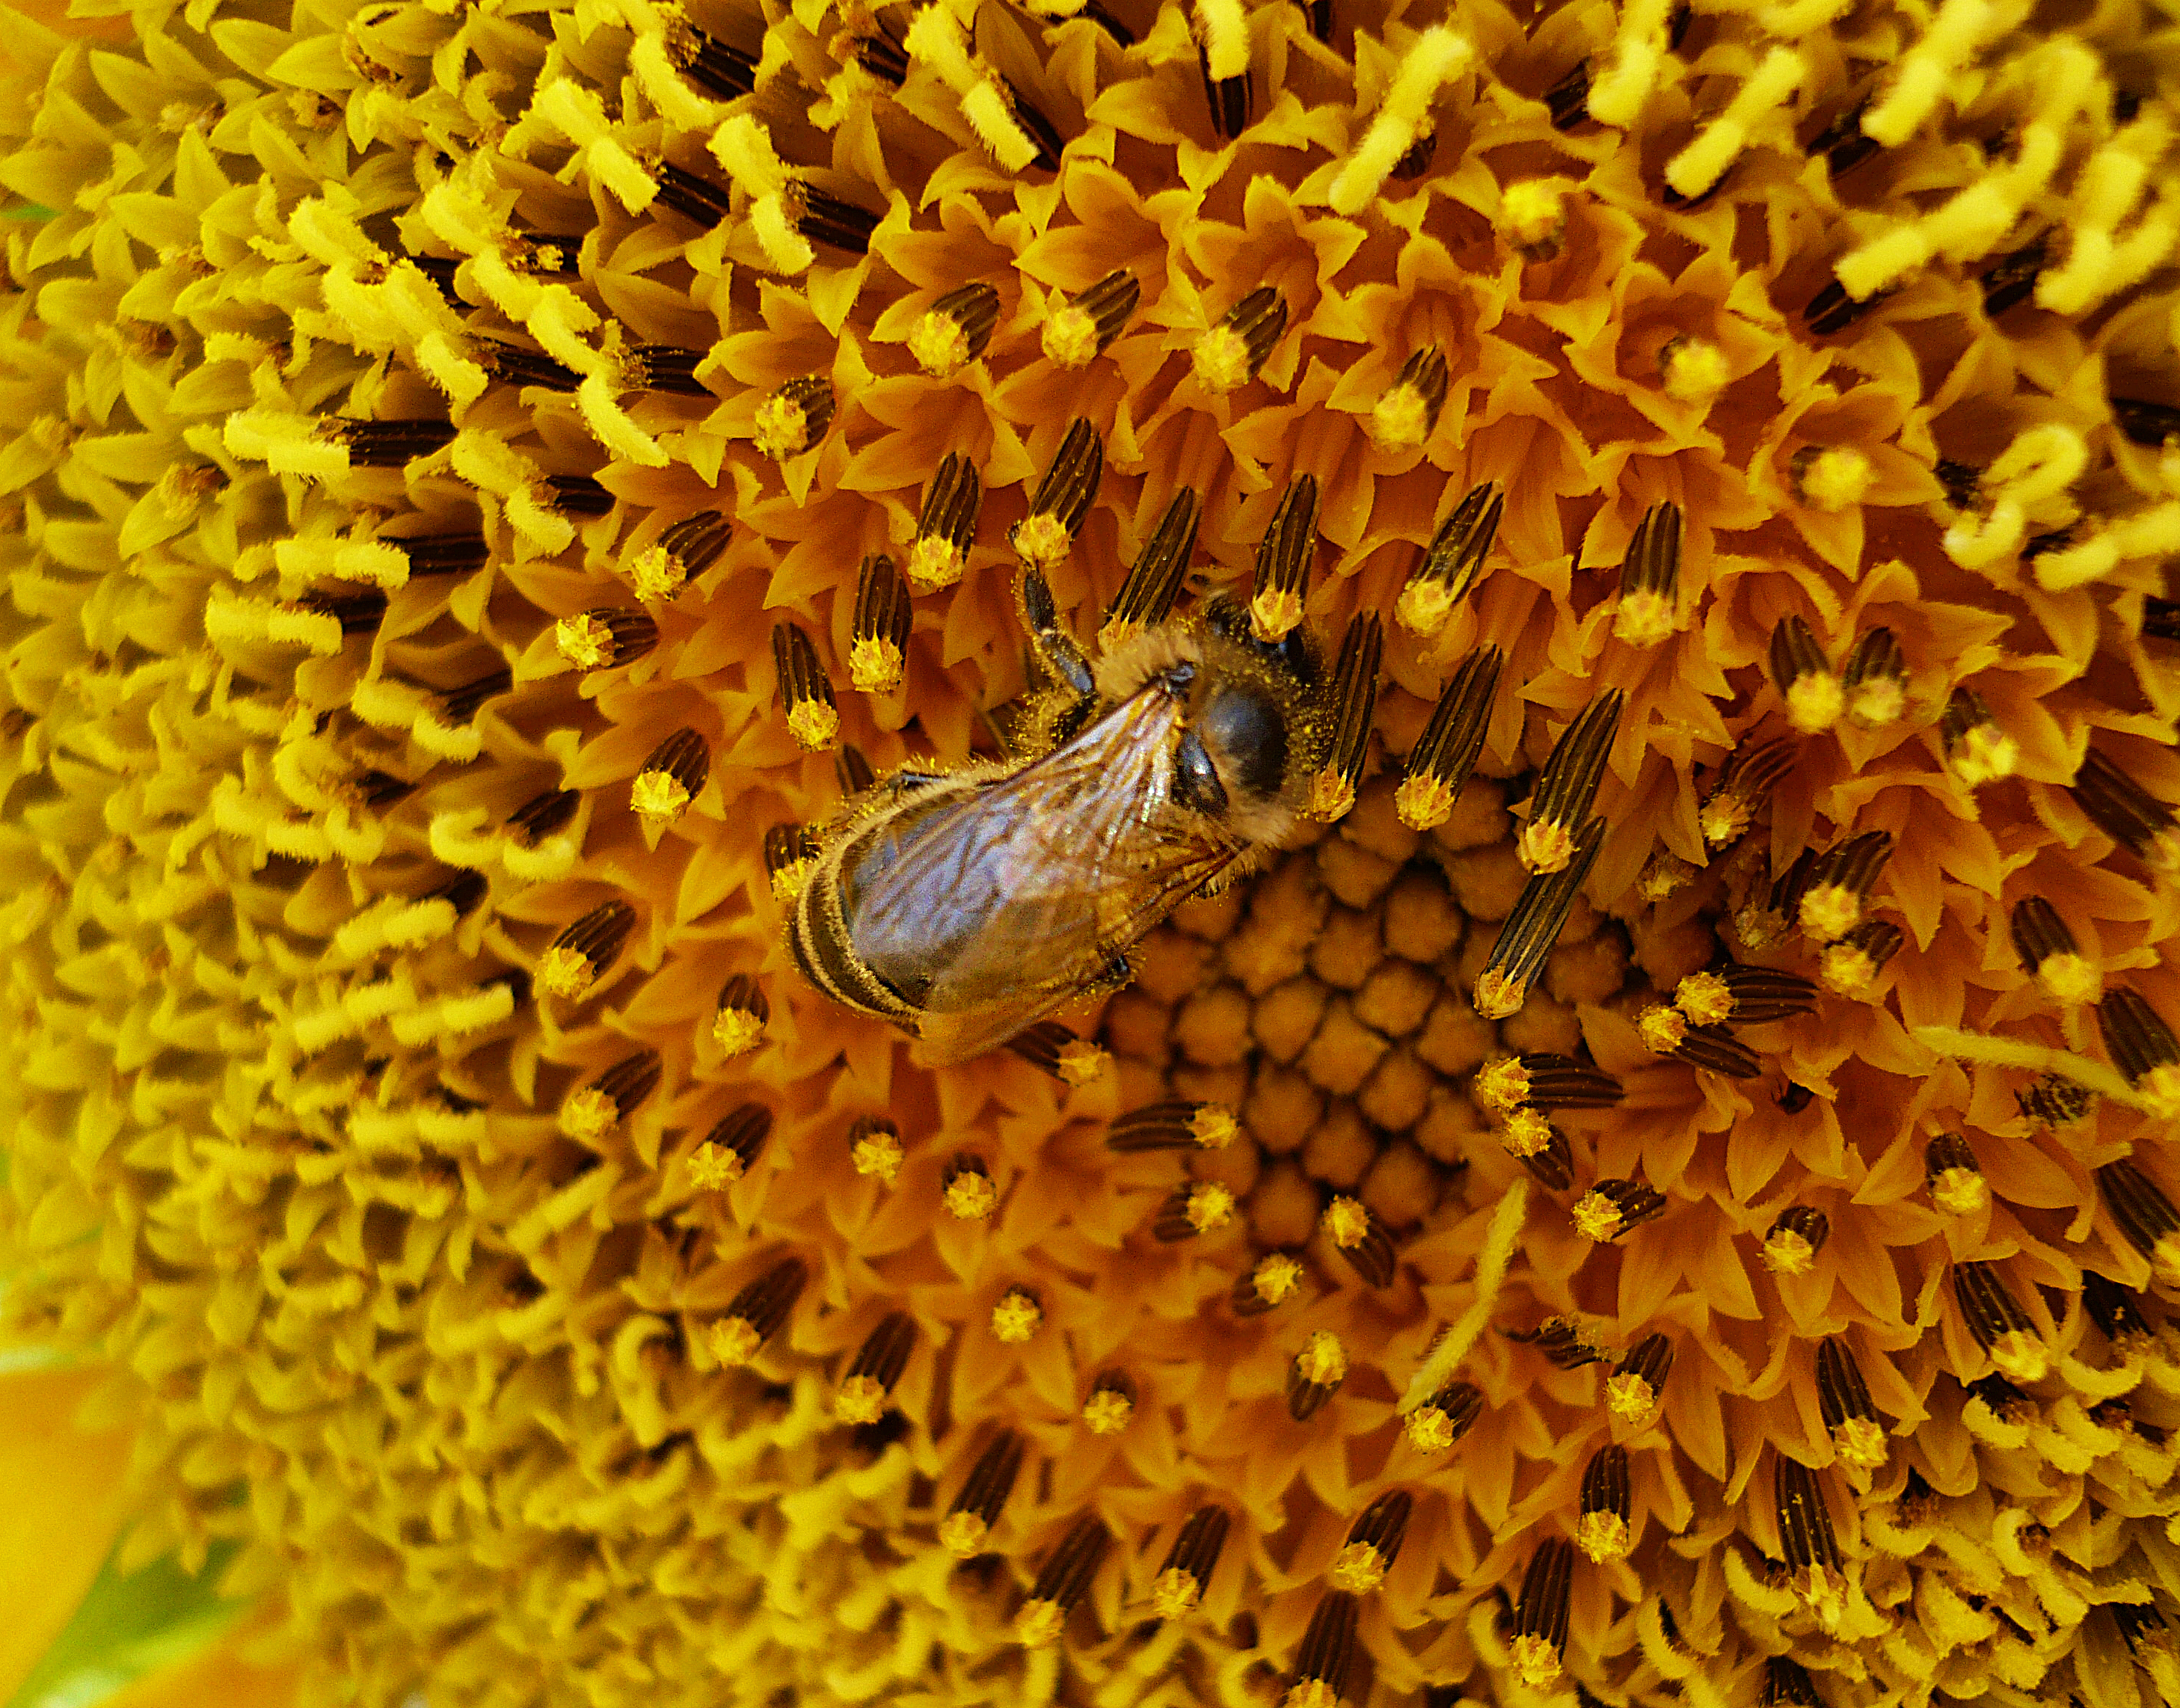 Скачать обои бесплатно Пчела, Насекомые, Животные картинка на рабочий стол ПК